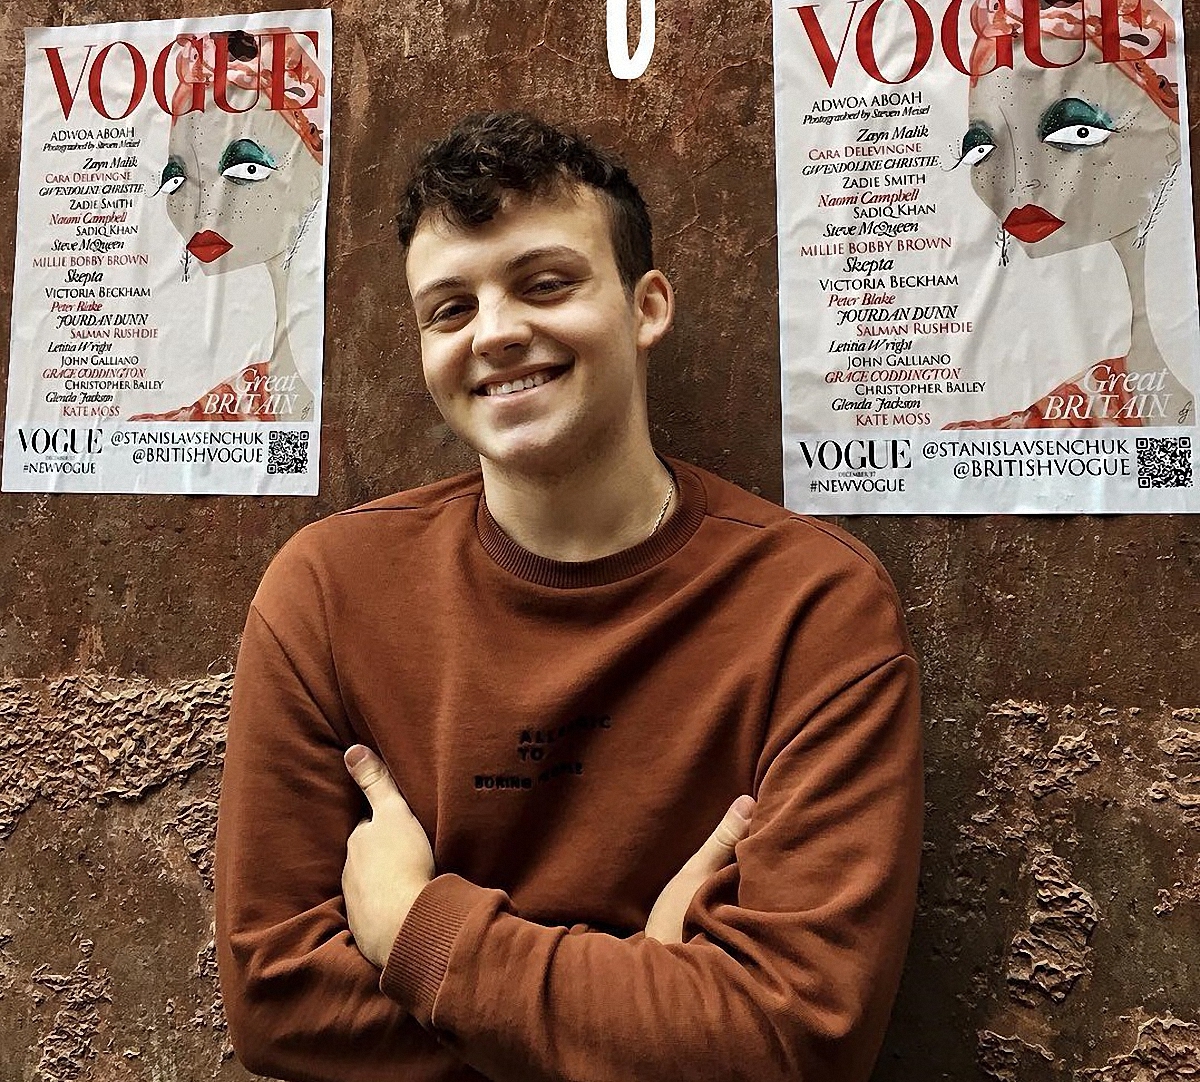 Журнал Vogue выбрал для обложки иллюстрацию украинского художника - фото 1